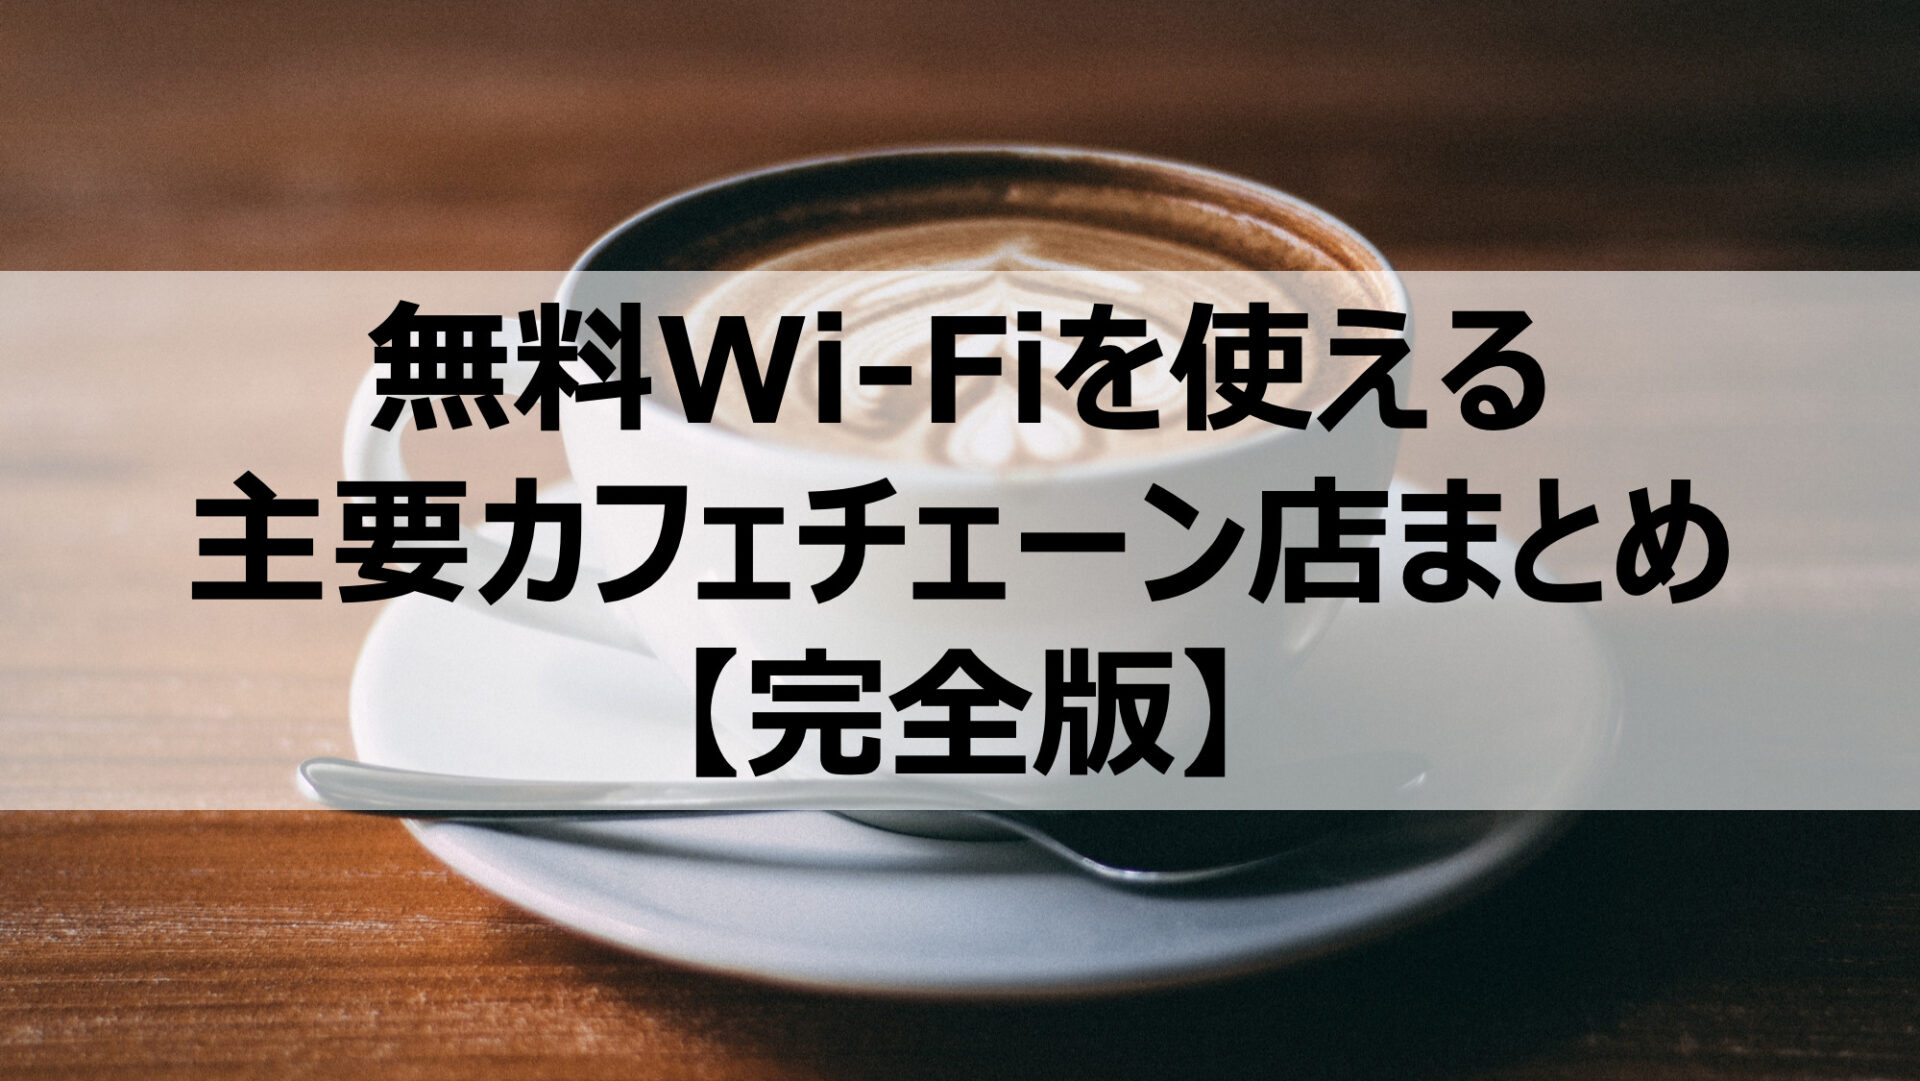 【全12店舗】無料Wi-Fiを使える主要カフェチェーン店まとめ【完全版】